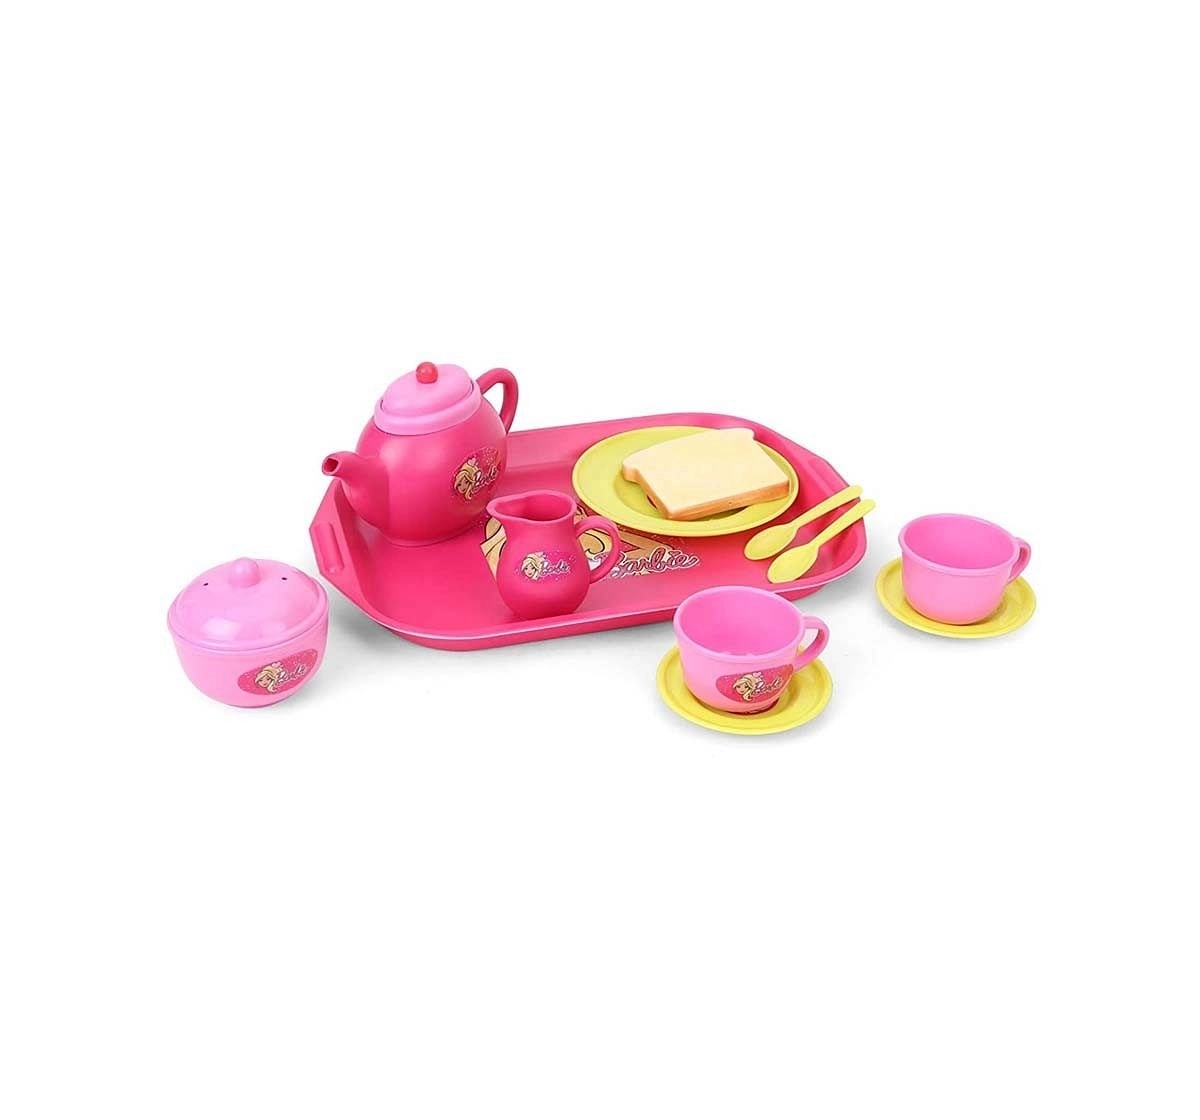 Barbie Tea Set Kitchen Sets & Appliances for Kids Age 3Y+